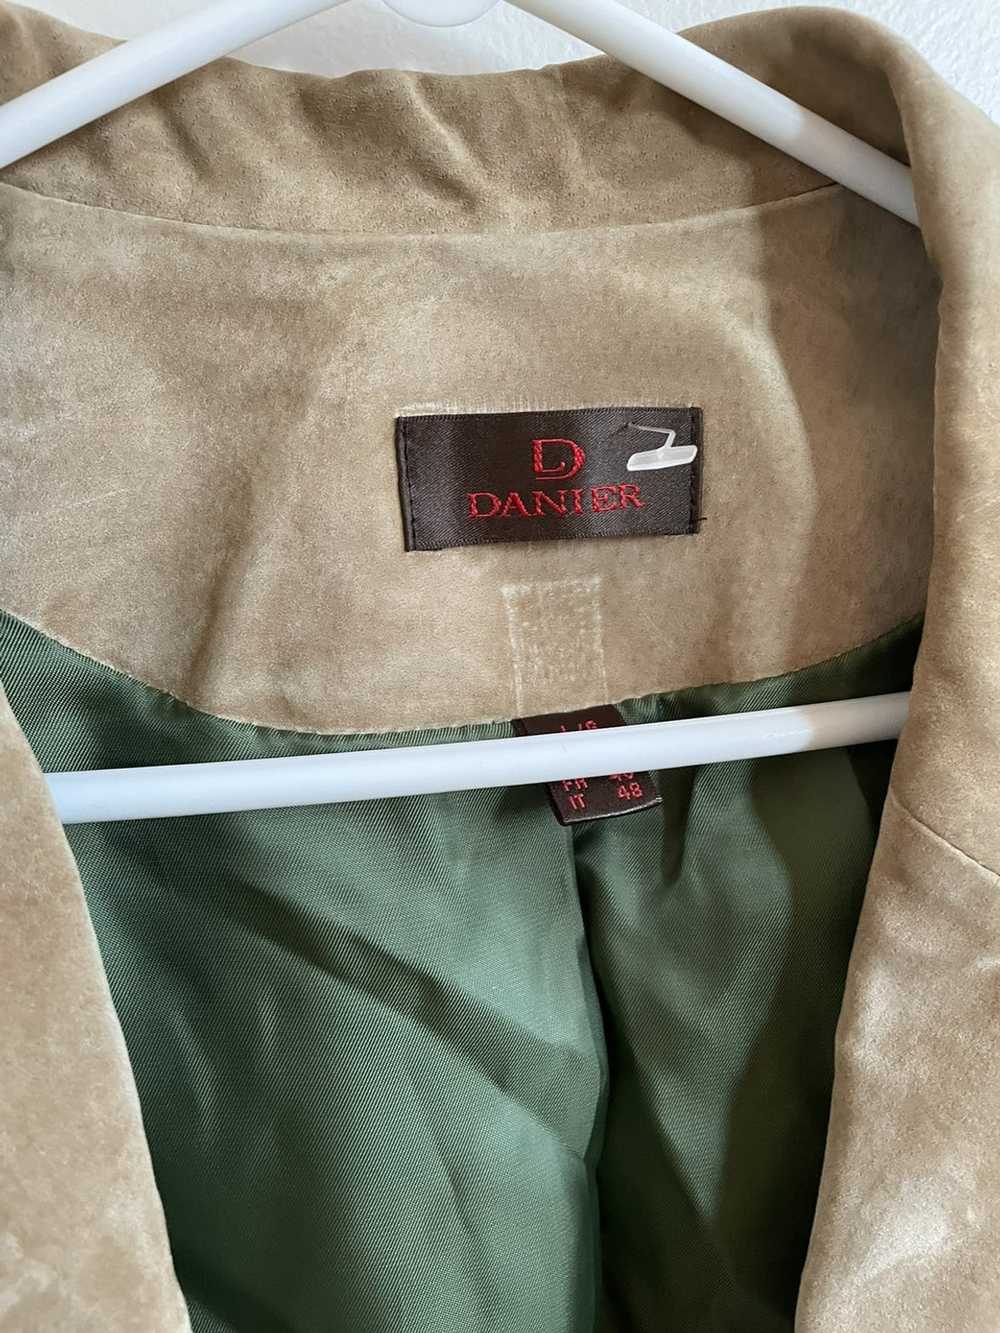 Danier Danier vintage suede jacket - image 2